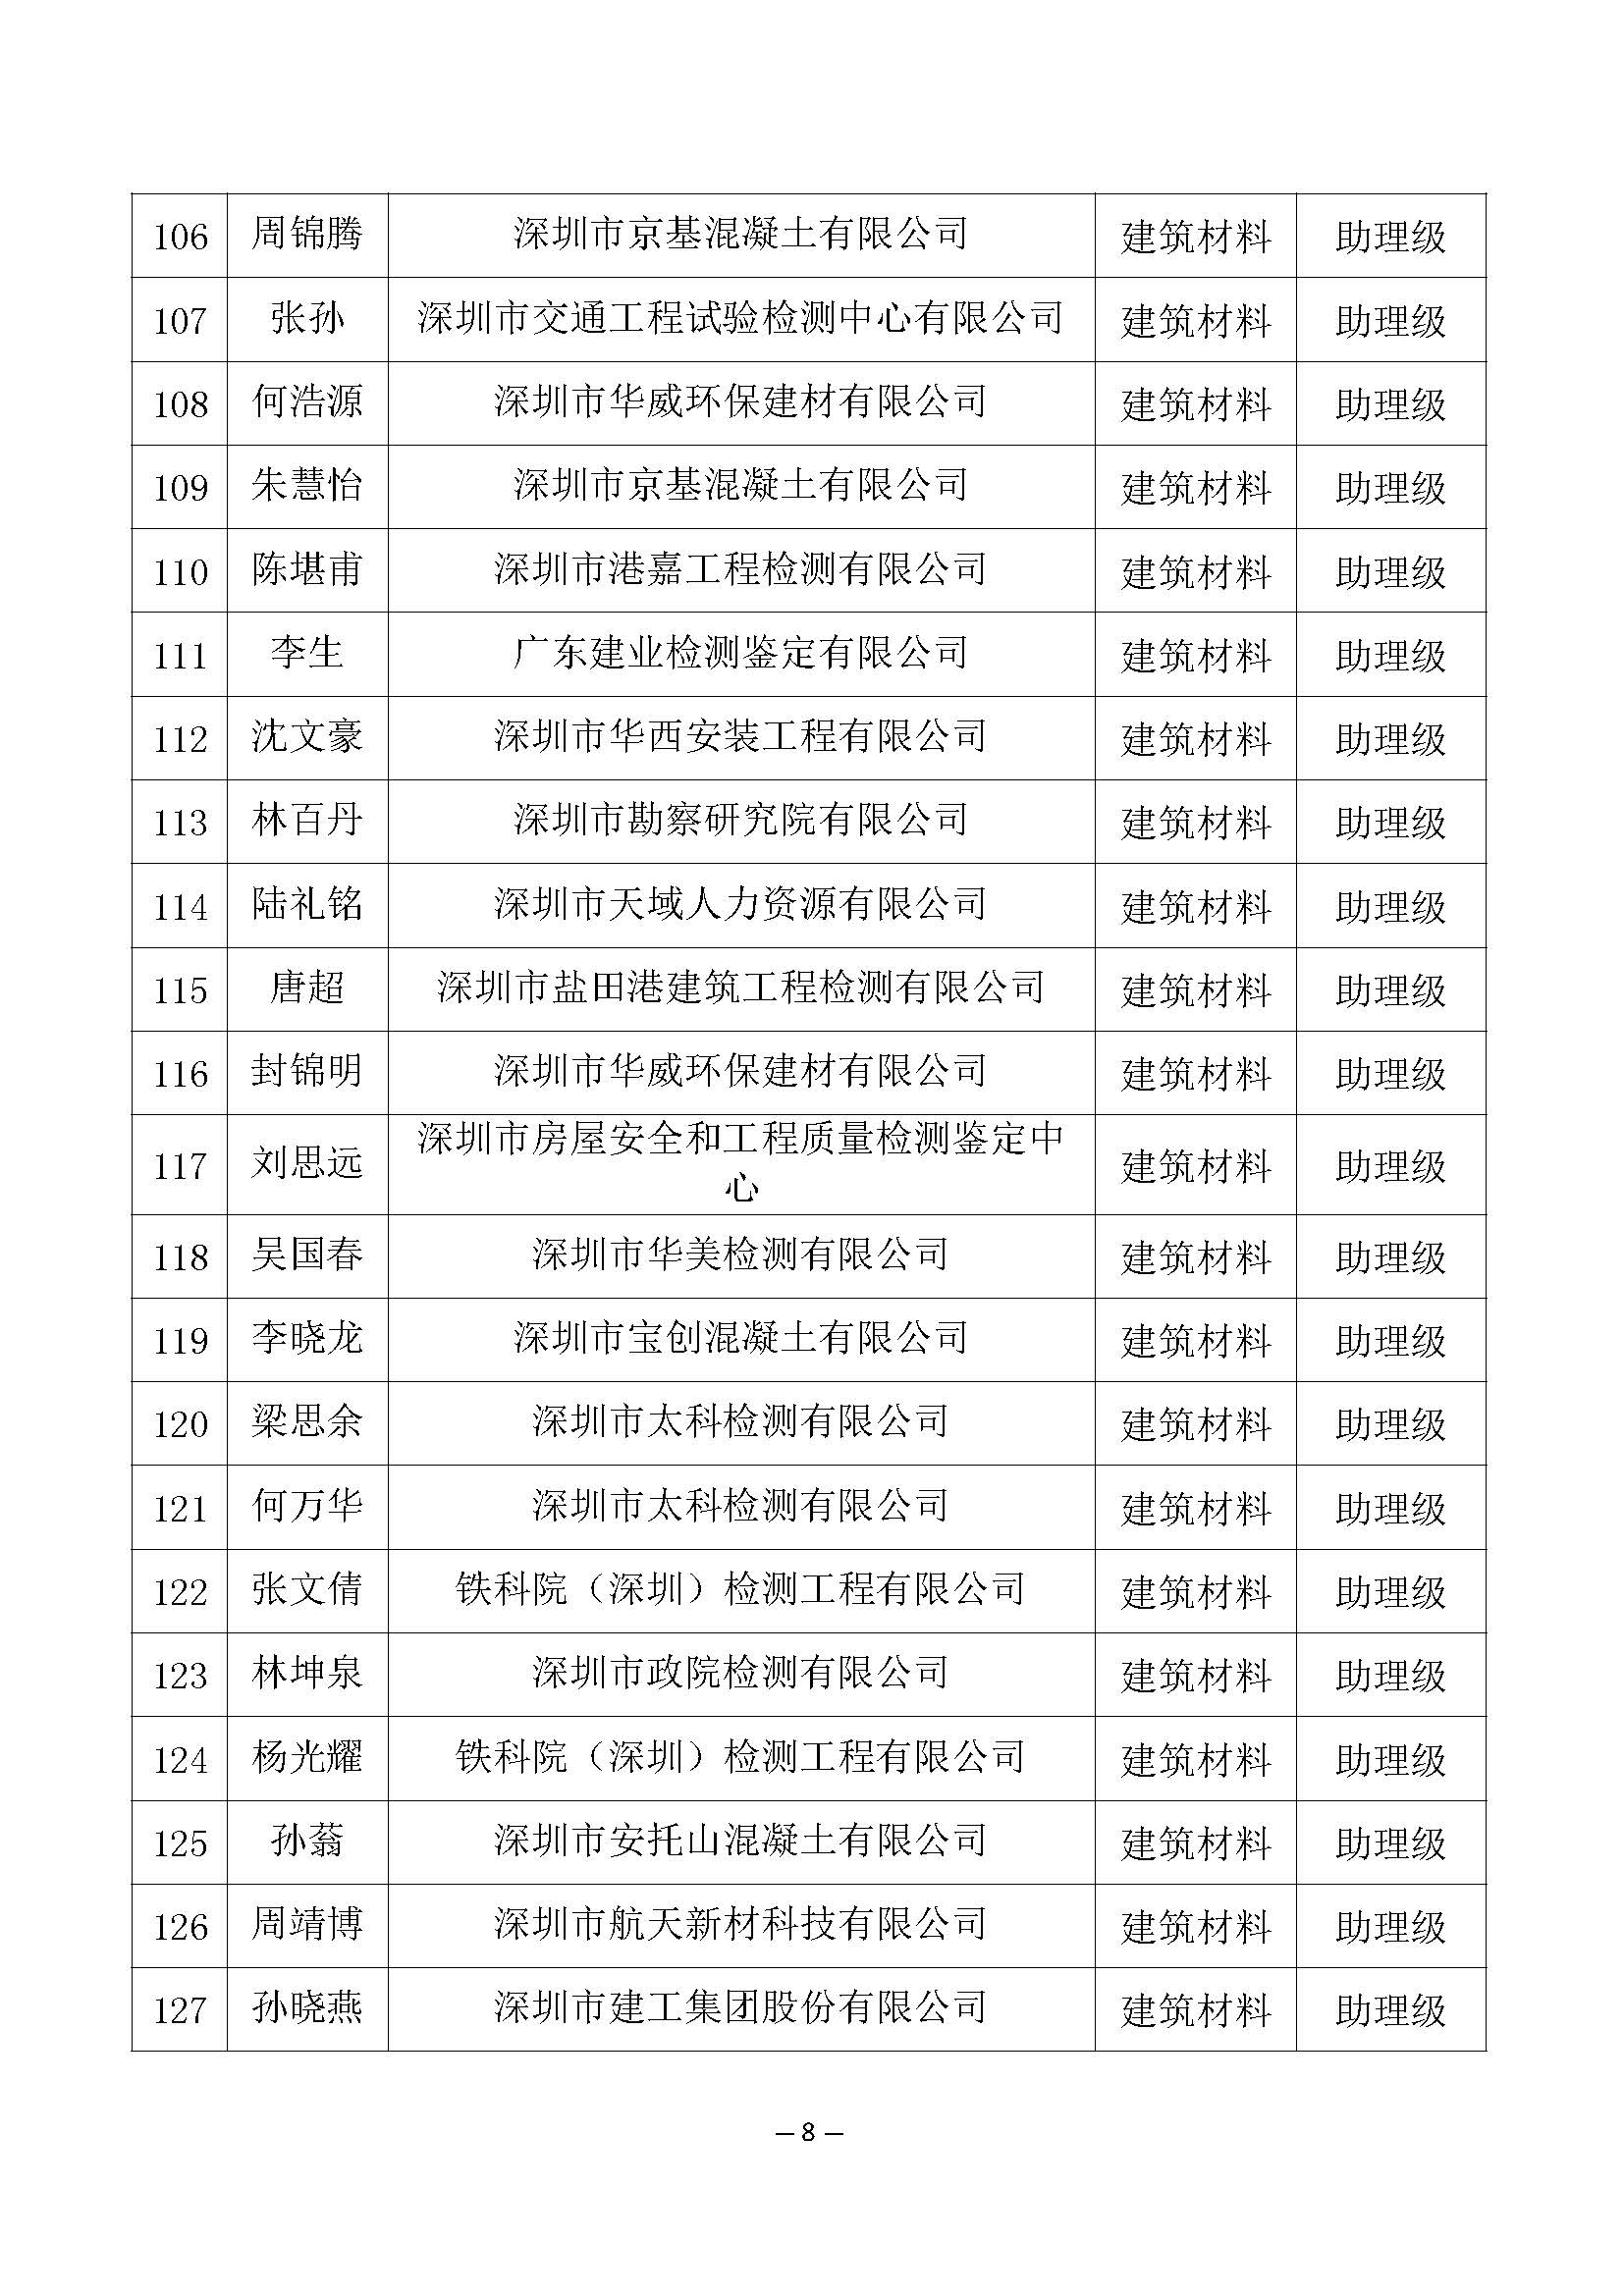 2021年度深圳市建筑材料专业高级职称评审委员会建筑材料专业高、中、初级职称评审通过人员公示_页面_8.jpg